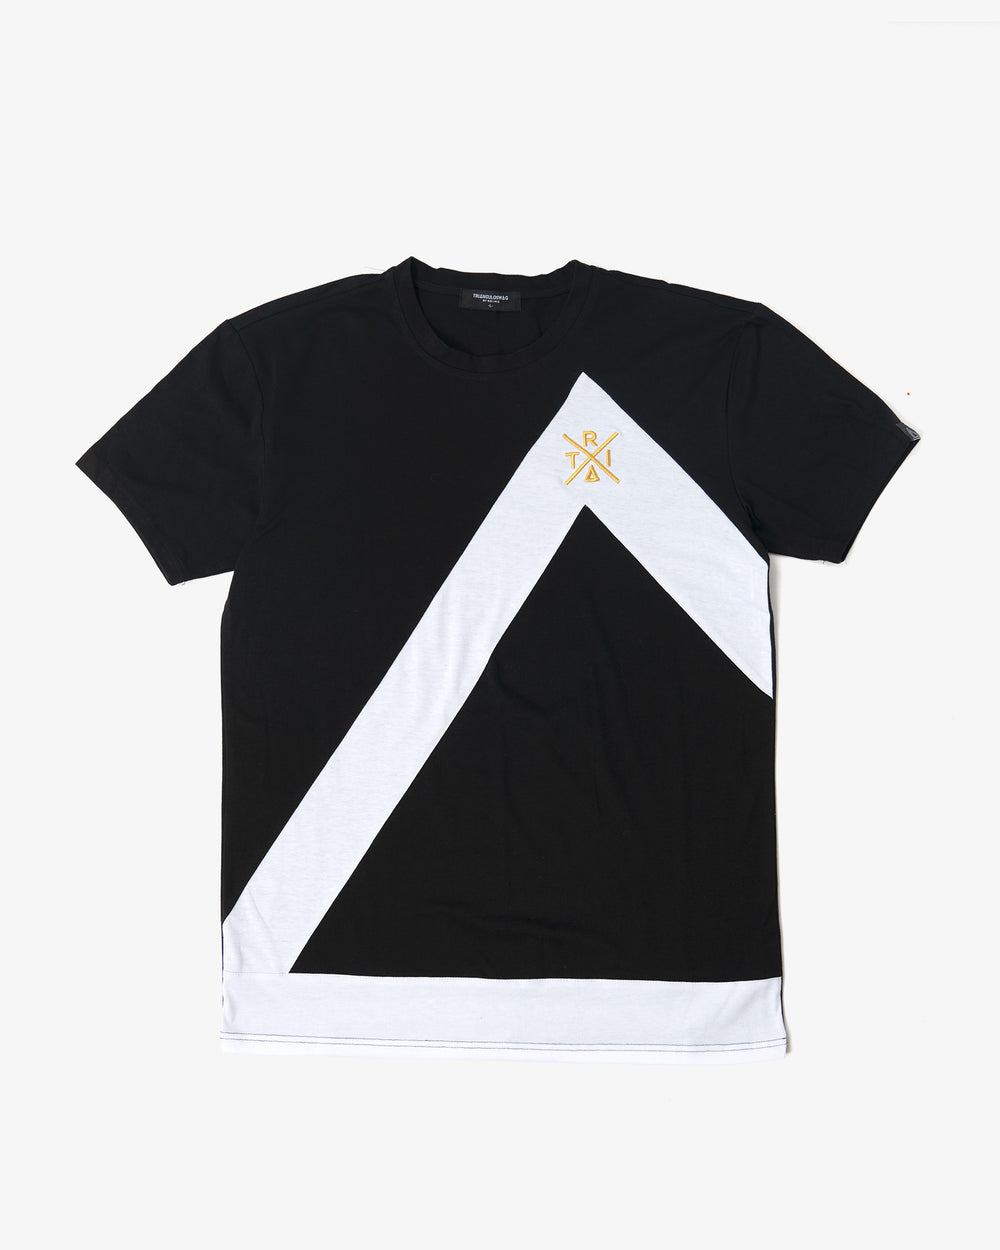 BLACK / WHITE Triangulo Across Tshirt